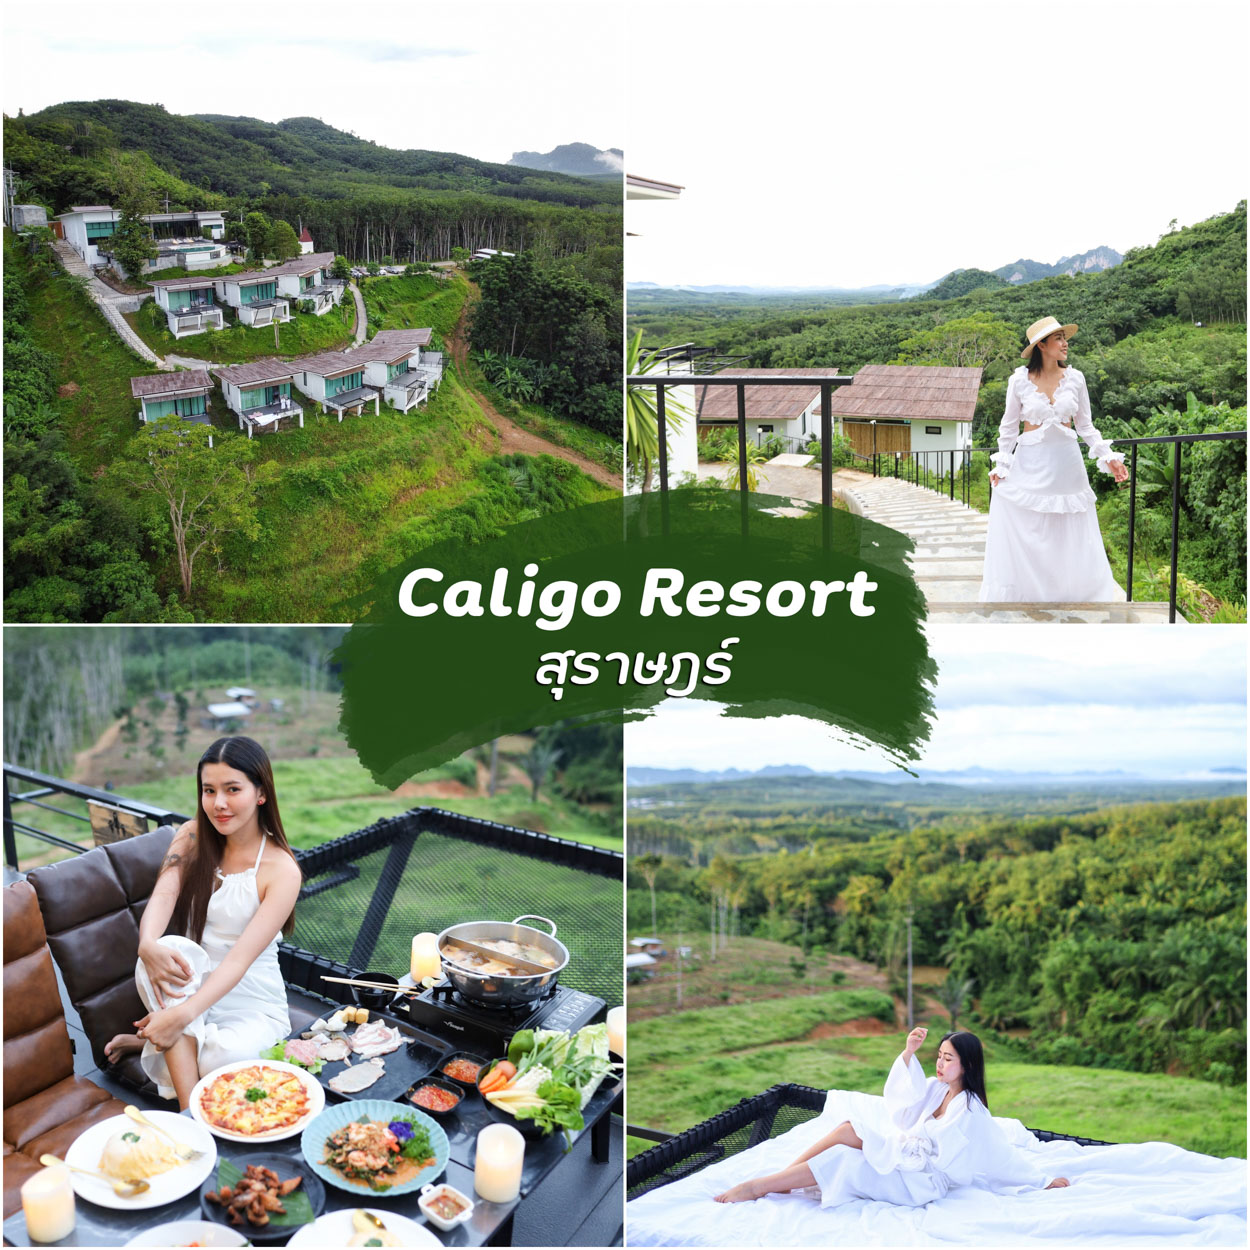 Caligo-Resort -ที่พักสุราษฎร์-คาลิโก้รีสอร์ท-สัมผัสบรรยากาศทะเลหมอกทางใต้-นอนแช่อ่าง-ชมทะเลหมอก-สุดฟิน-อาหารอร่อย-วิวหลักล้าน-360-องศากันเลยทีเดียวว-มีชาบูฟินๆอุ่นๆได้ฟิลมากเลยฮะ ที่พัก,สุราษฎร์ธานี,เขาสก,ธรรมชาติ,เขื่อนเชี่ยวหลาน,สุดสวย,วิวหลักล้าน,ธรรมชาติ,ทะเล,ภูเขา